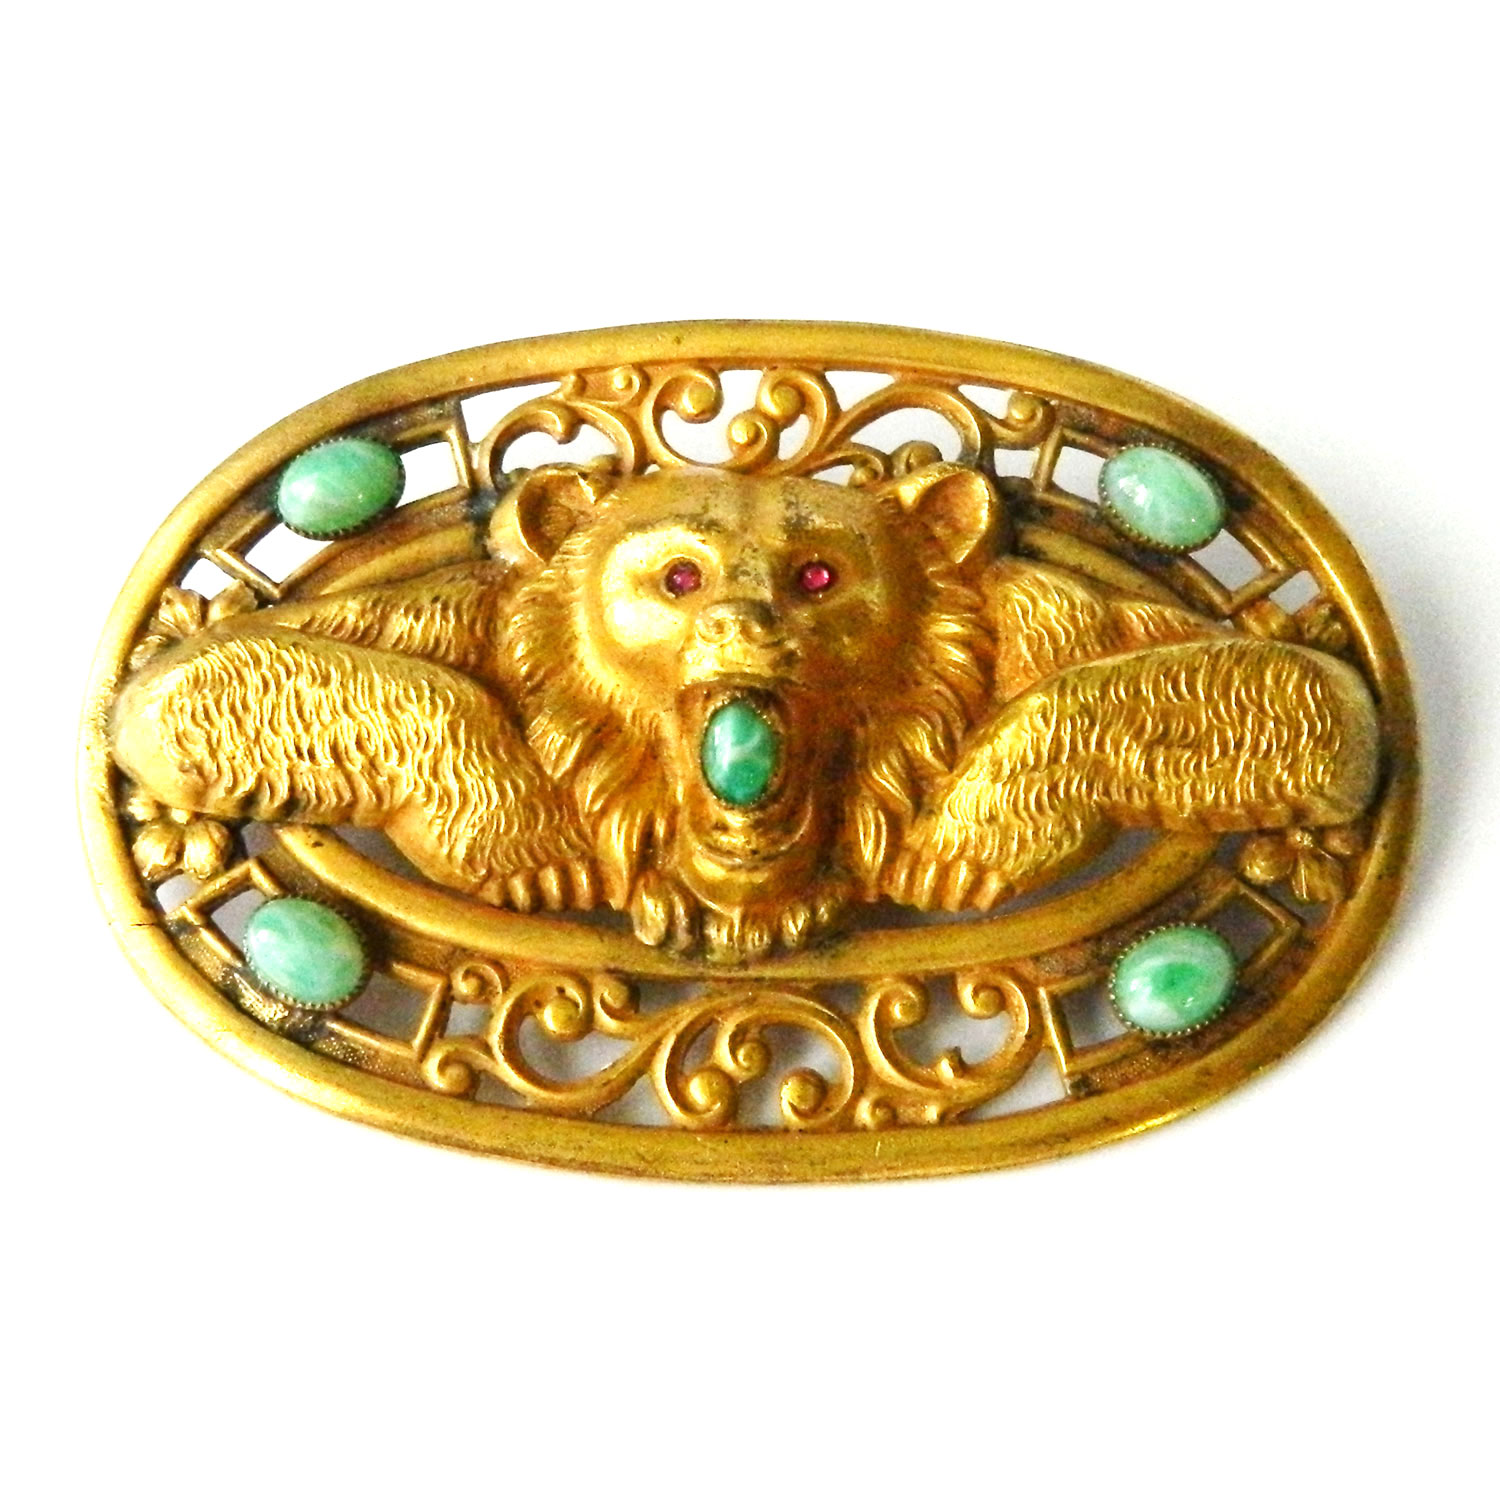 Antique bear brooch